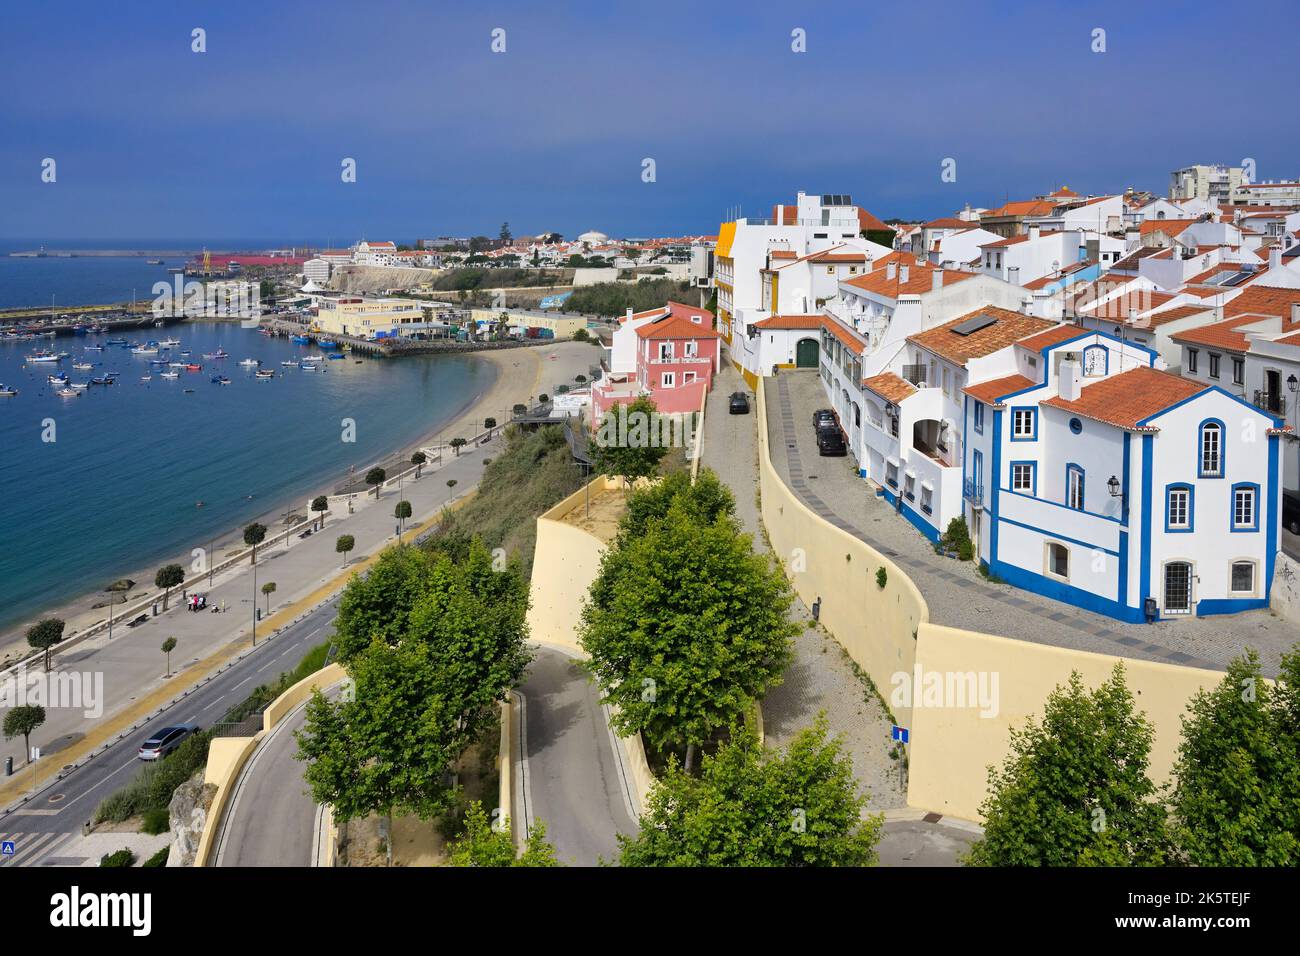 Vista panoramica sul centro storico, sul porto e sull'oceano Atlantico, Sines, Alentejo, Portogallo Foto Stock